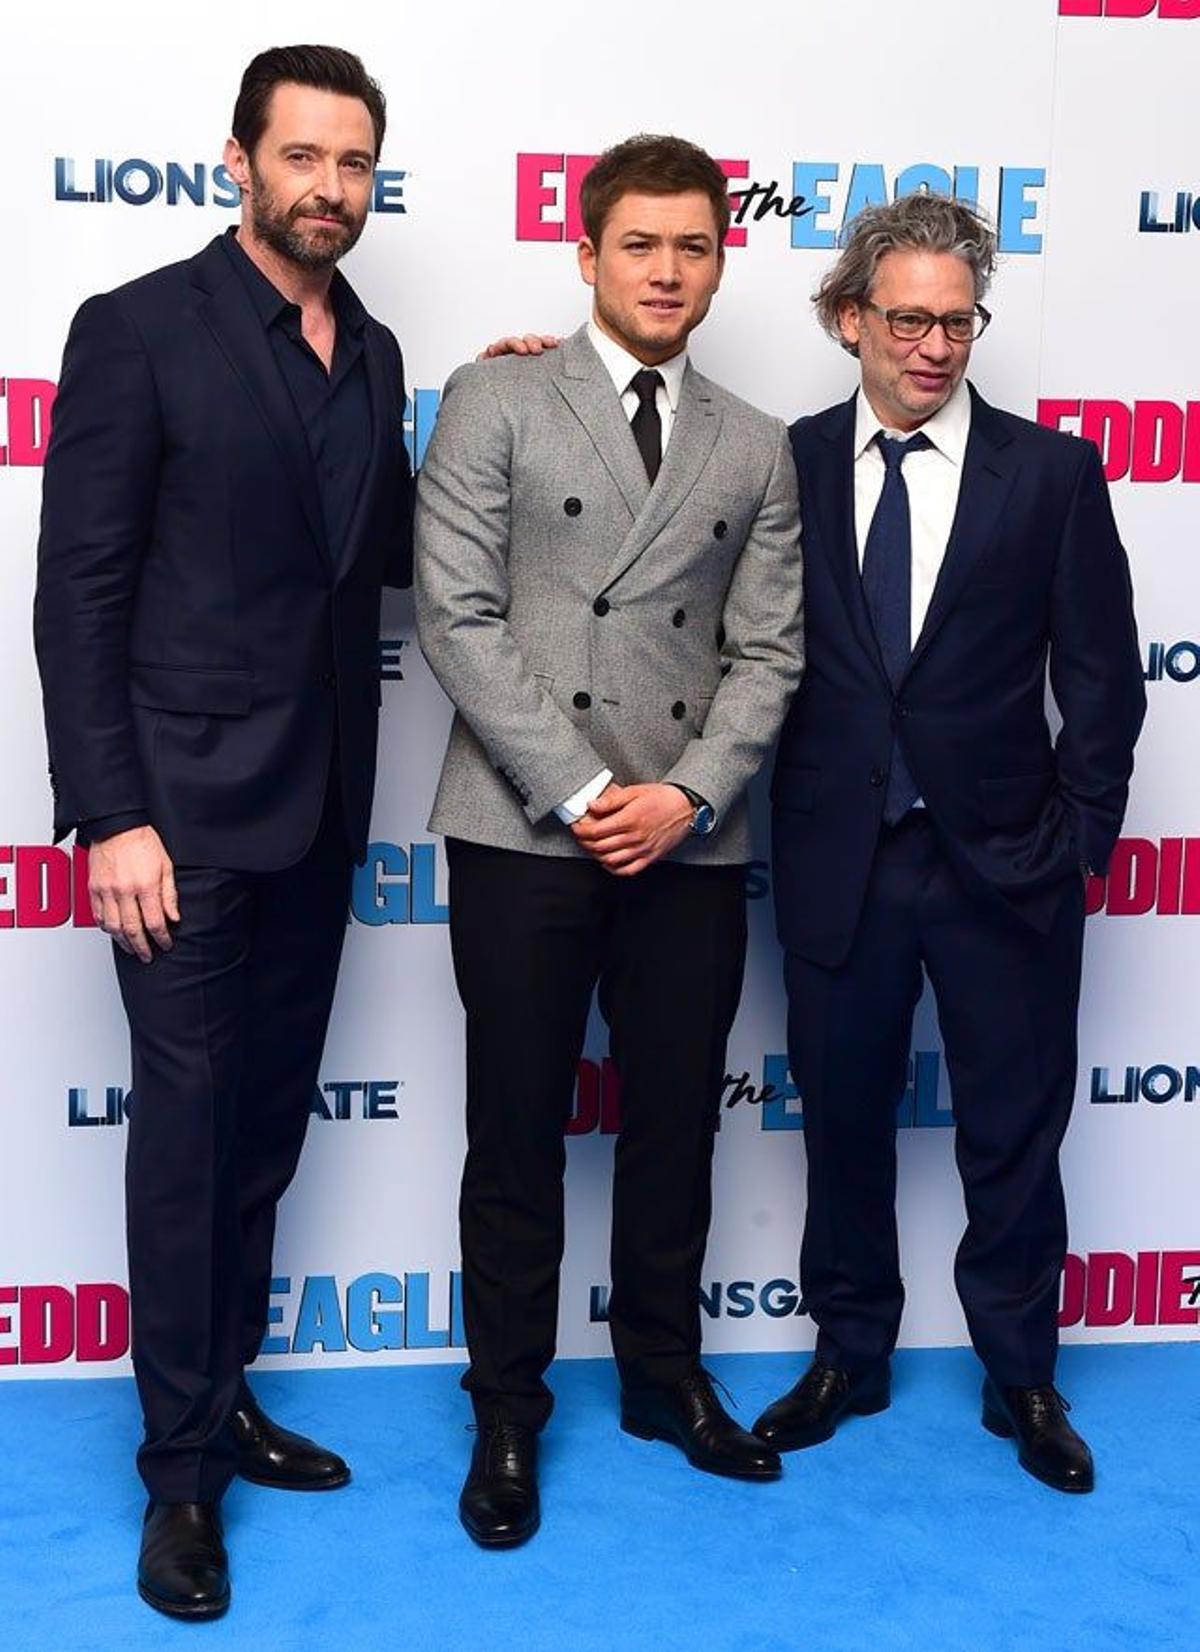 Hugh Jackman, Taron Egerton y Dexter Fletcher, en el estreno de Eddie, the eagle en Londres.